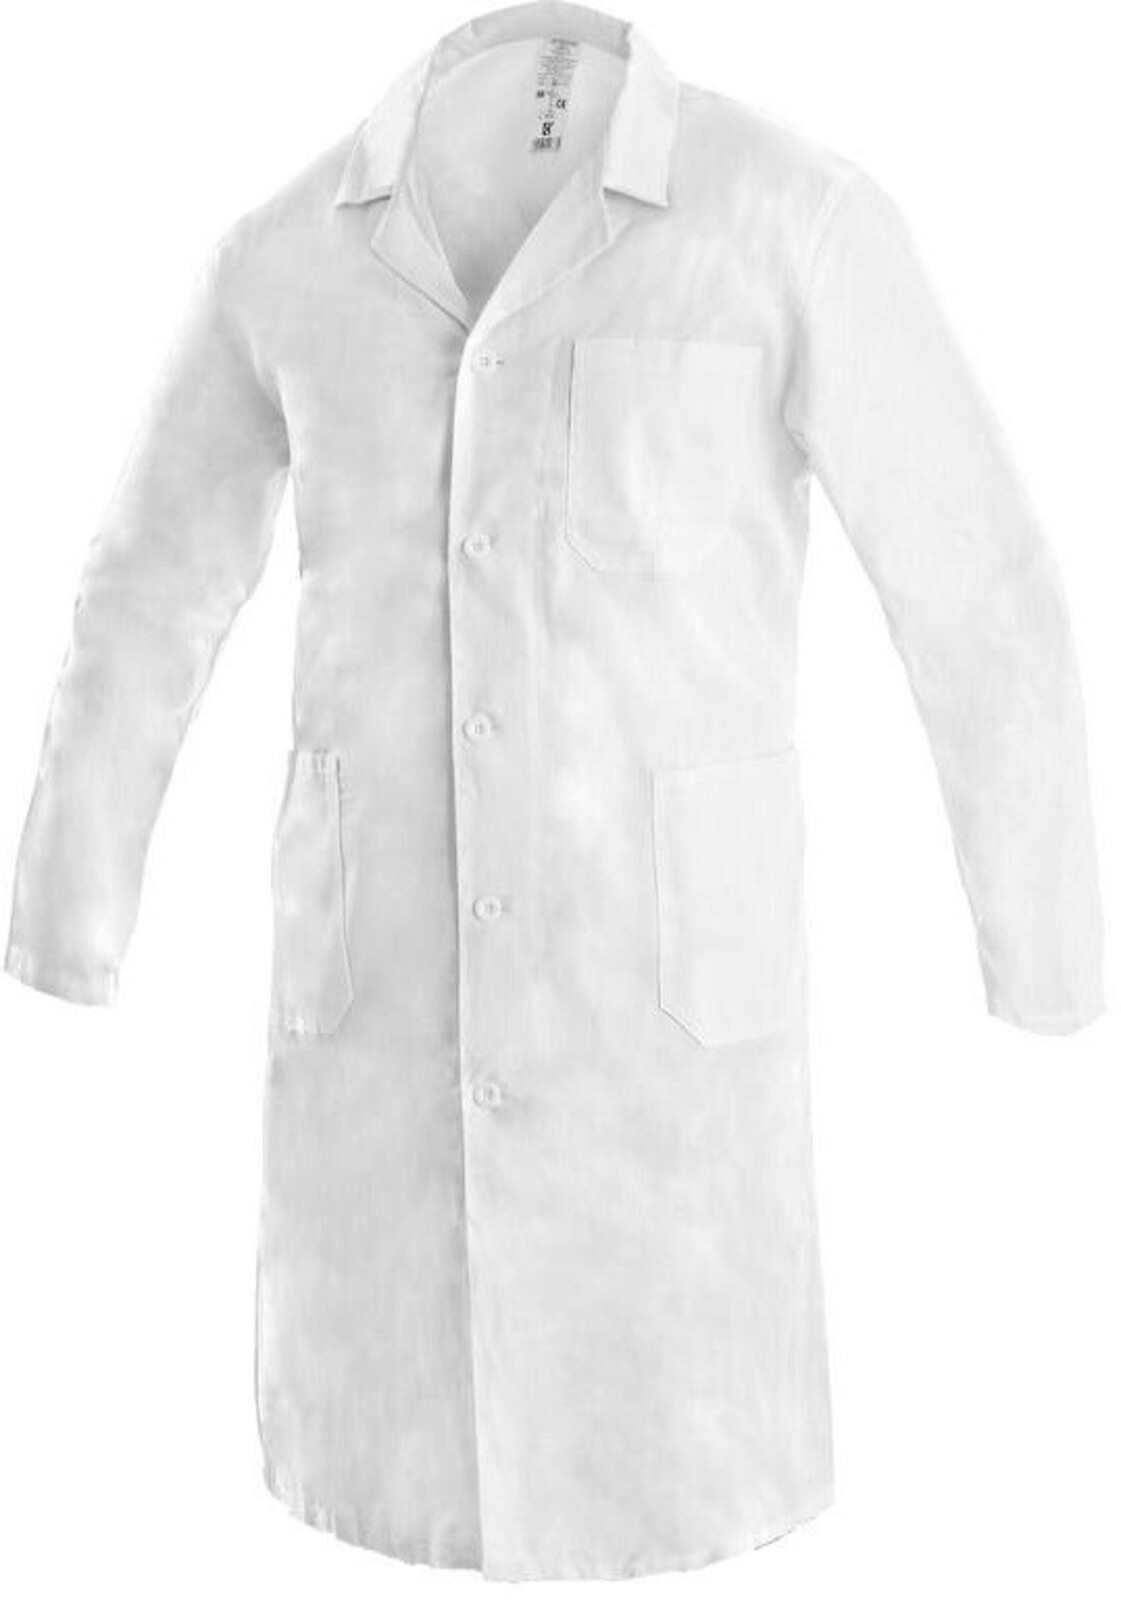 Pánsky plášť CXS Adam - veľkosť: 62, farba: biela